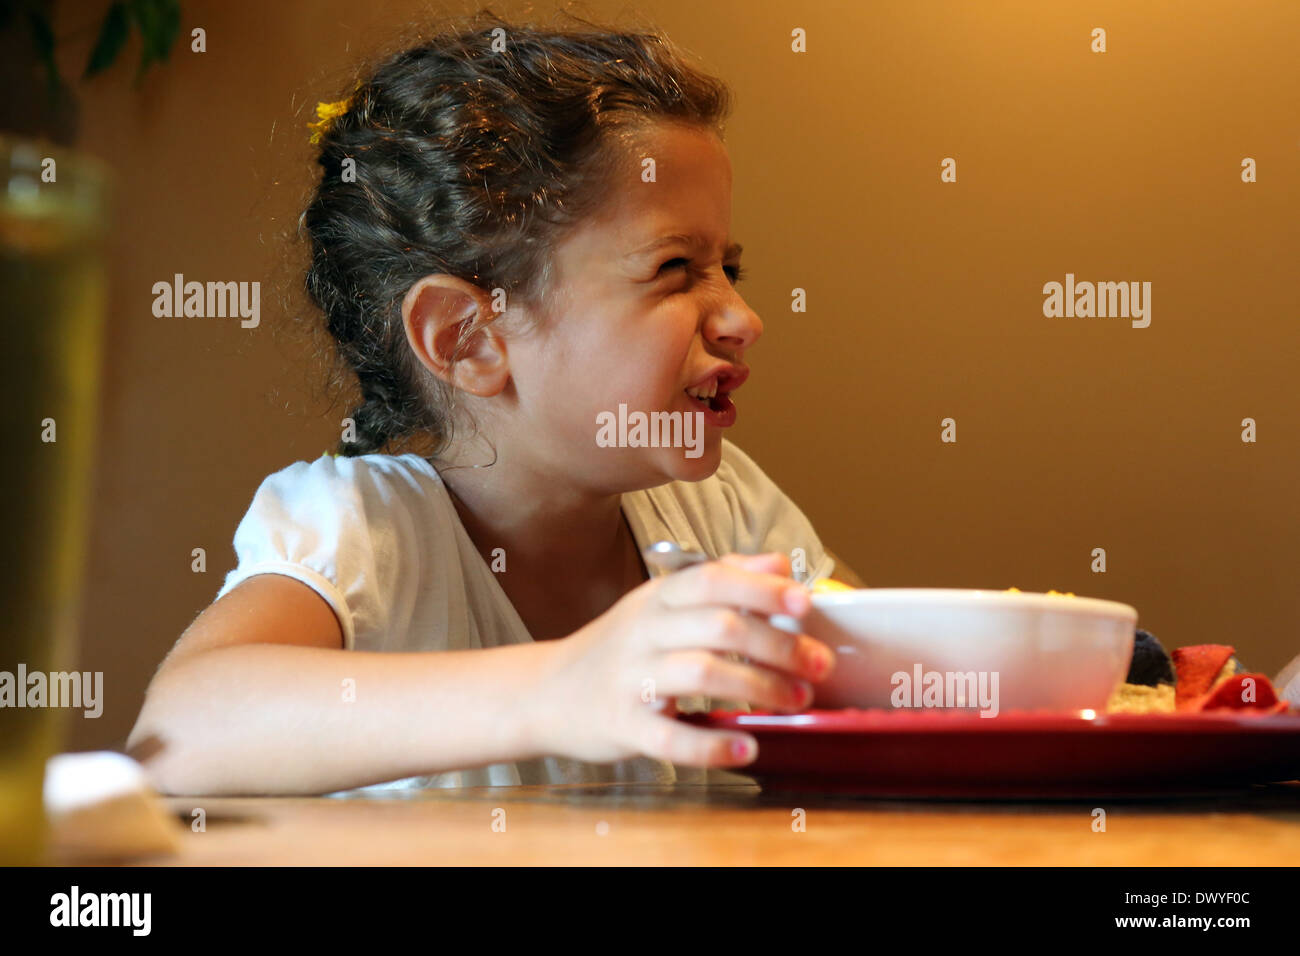 Du Bois, Vereinigte Staaten von Amerika, zieht kleine Mädchen während des Essens die Nase krauss Stockfoto